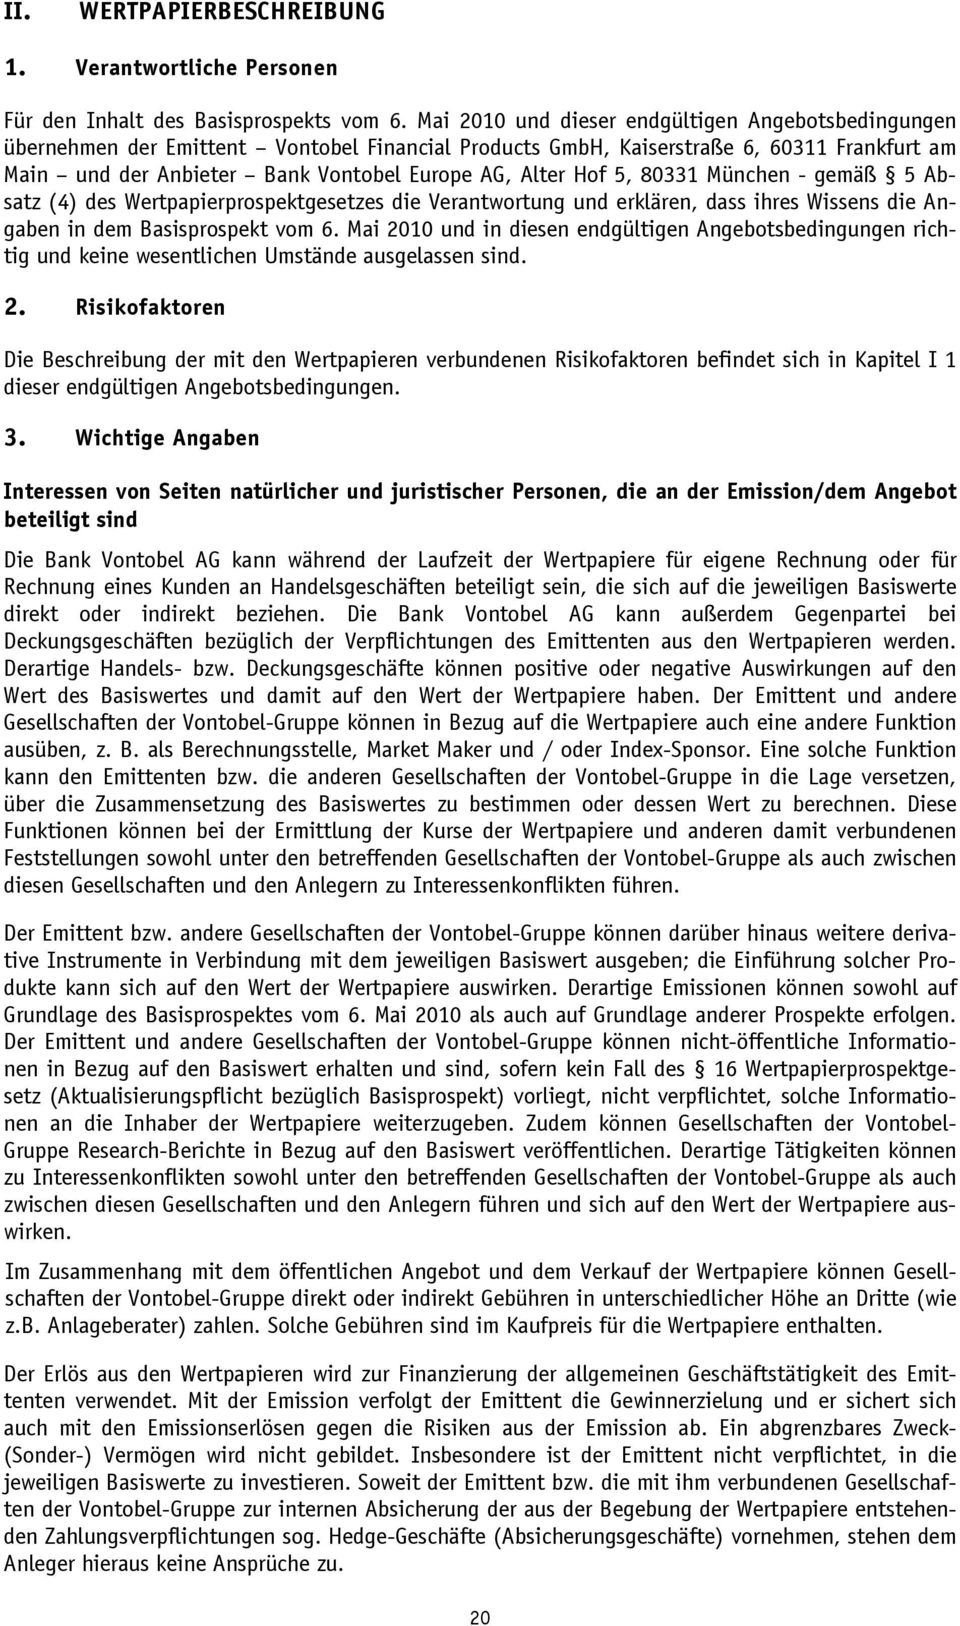 Hof 5, 80331 München - gemäß 5 Absatz (4) des Wertpapierprospektgesetzes die Verantwortung und erklären, dass ihres Wissens die Angaben in dem Basisprospekt vom 6.